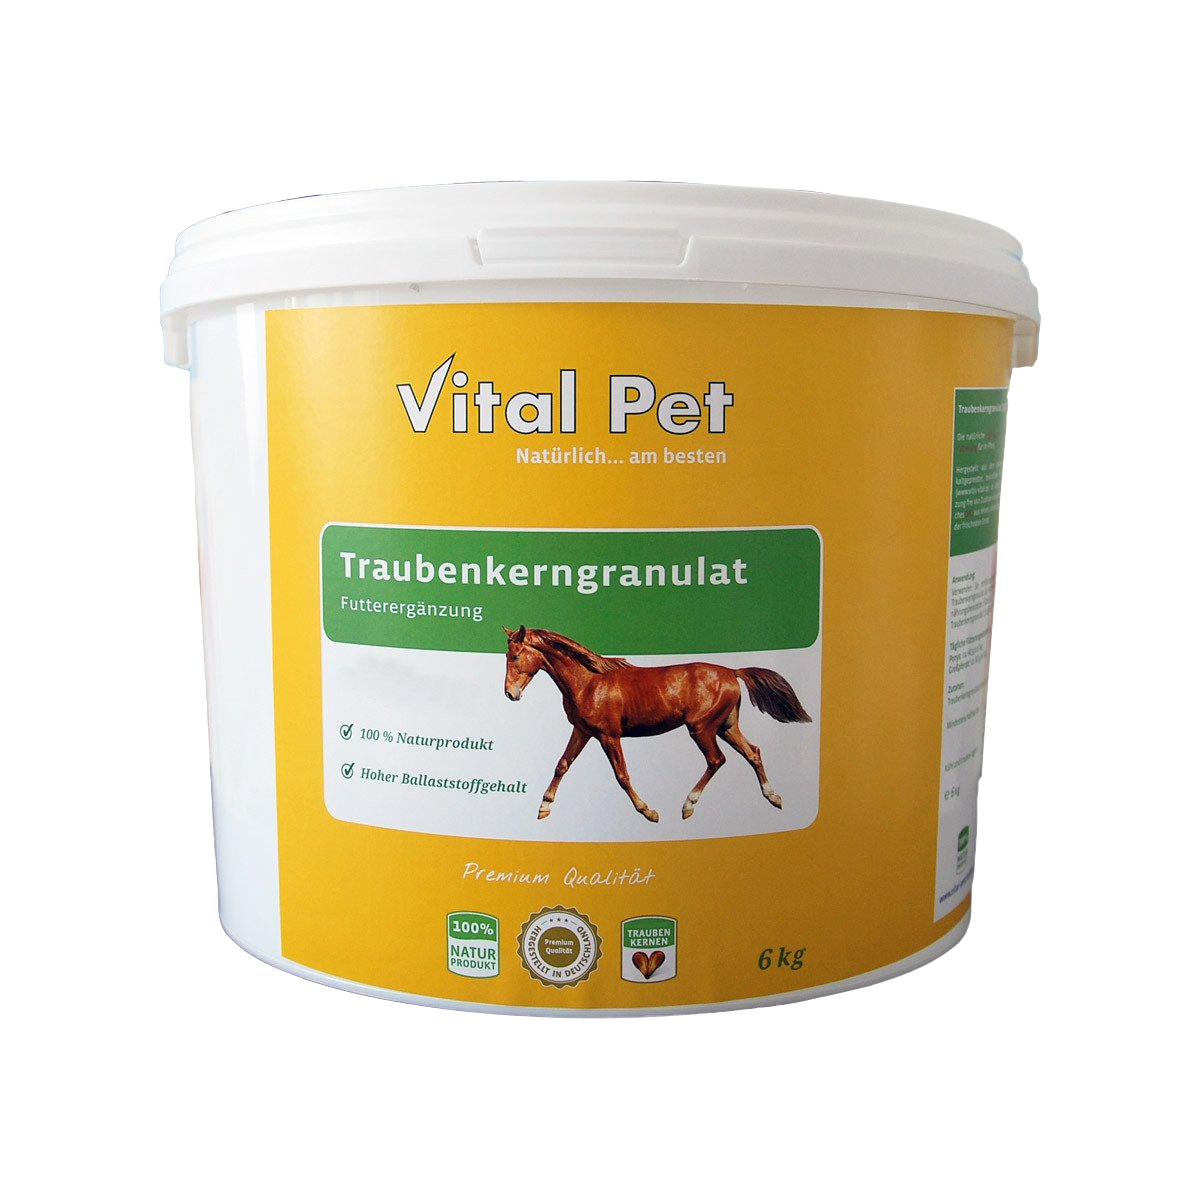 Vital Pet Traubenkerngranulat für Pferde | 6kg | Art.-Nr. 301